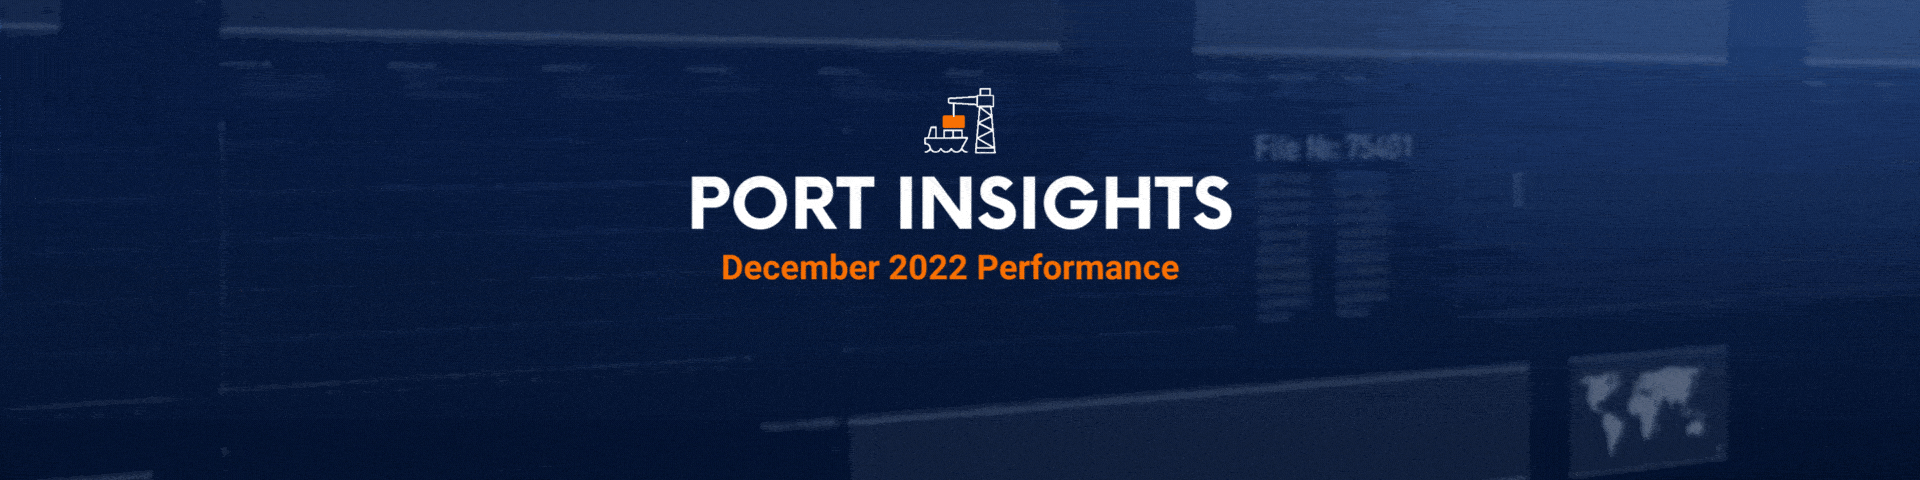 Port Insights December header